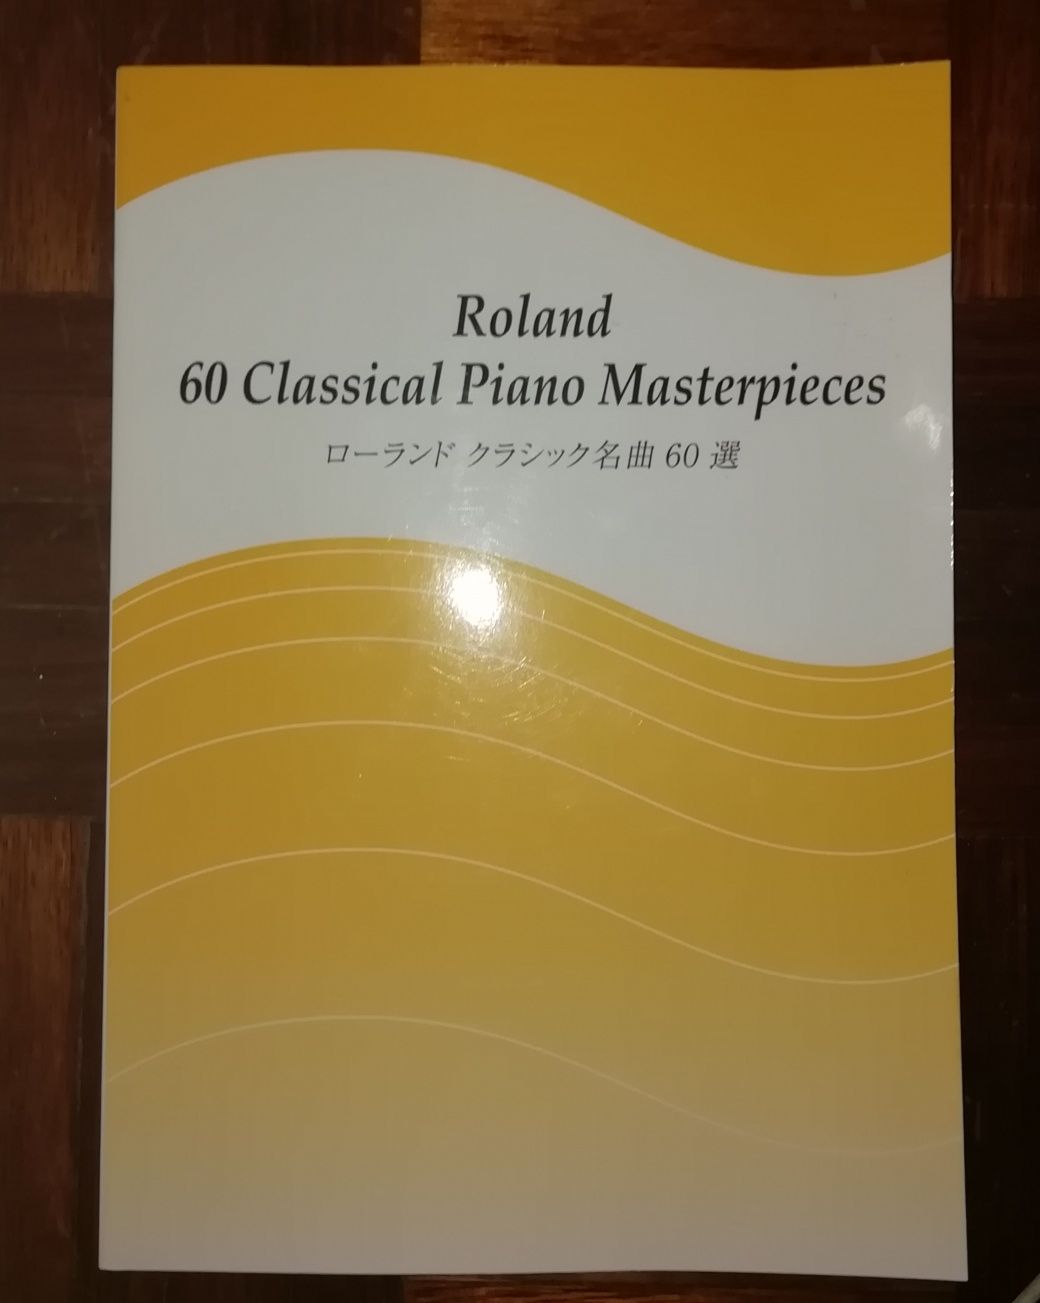 Livro com 60 obras para piano